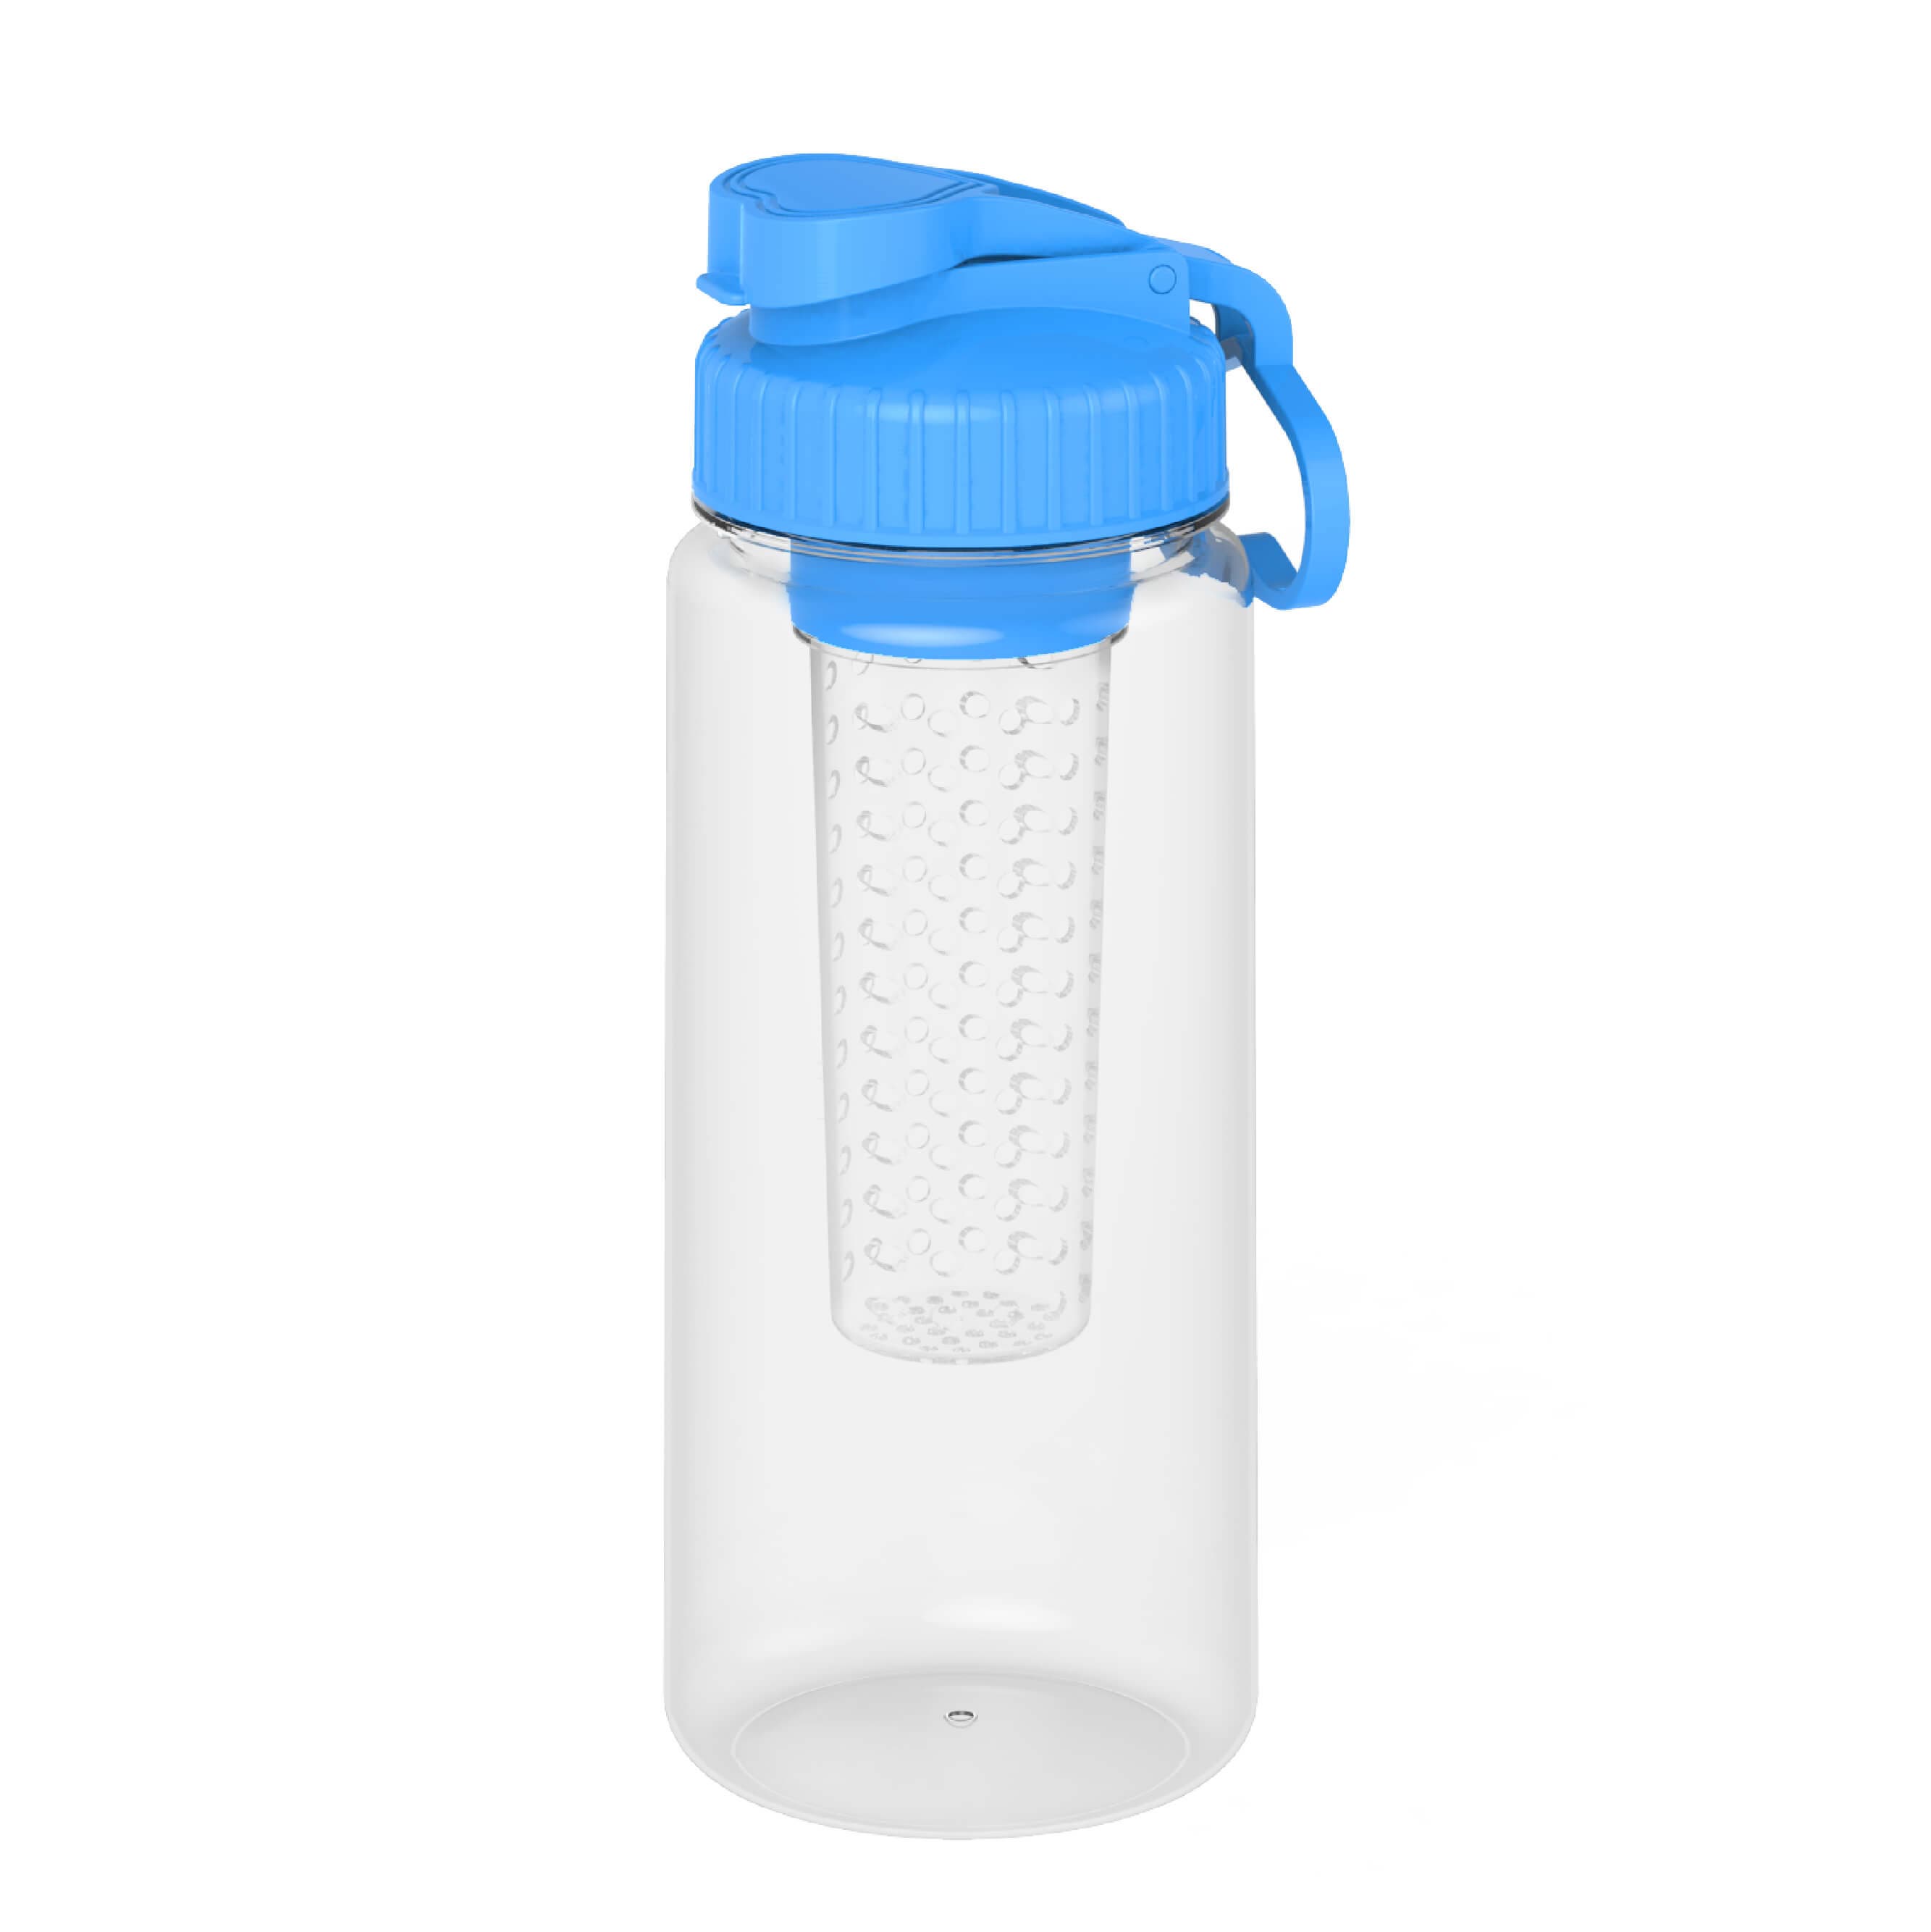 Household _ Water Bottle _ Detox Water Bottle 1L